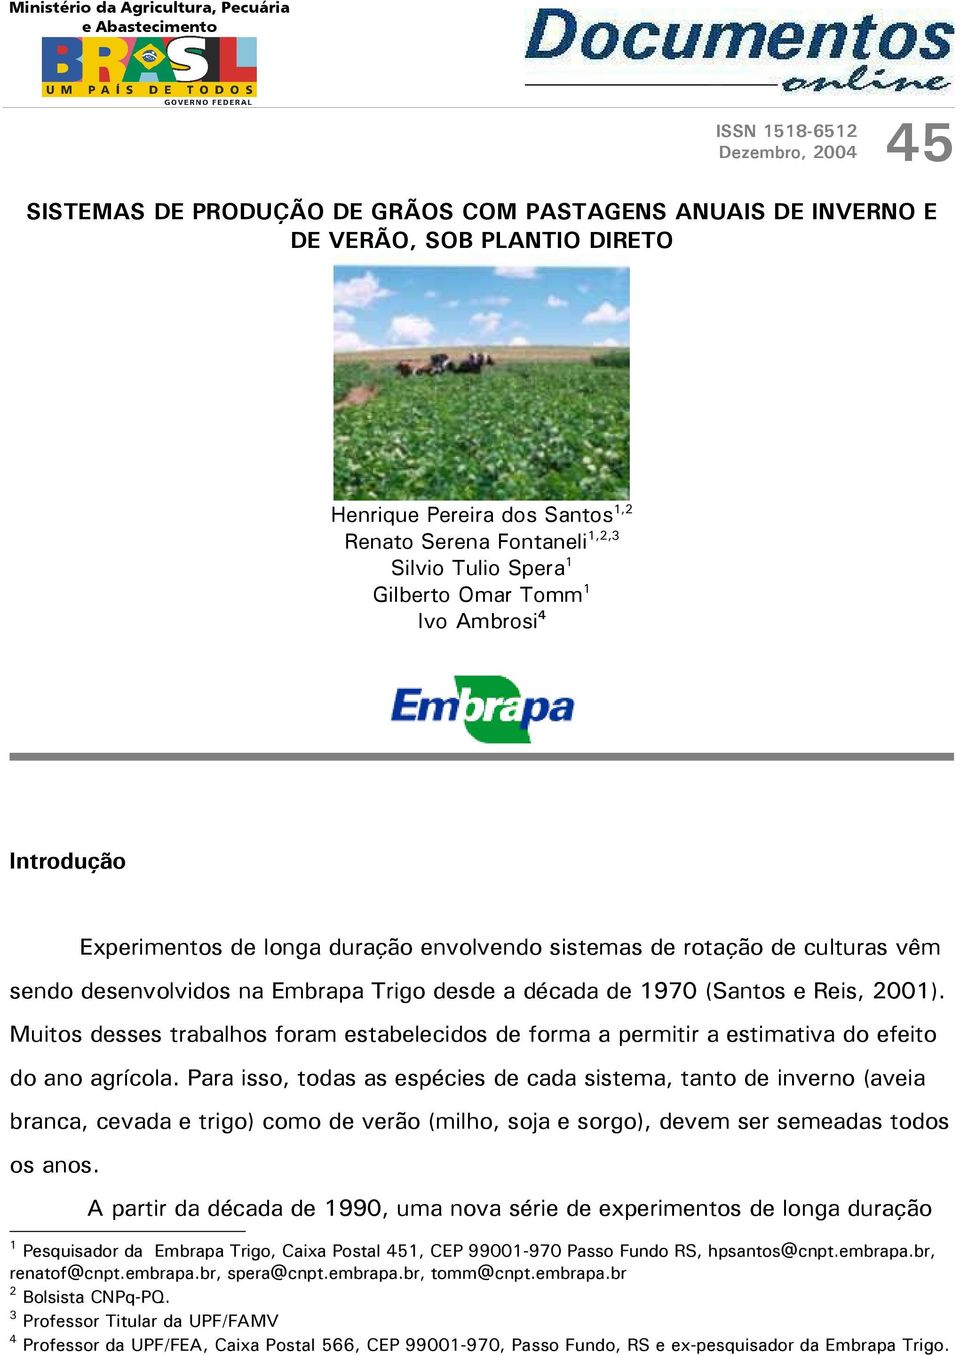 desenvolvidos na Embrapa Trigo desde a década de 1970 (Santos e Reis, 2001). Muitos desses trabalhos foram estabelecidos de forma a permitir a estimativa do efeito do ano agrícola.